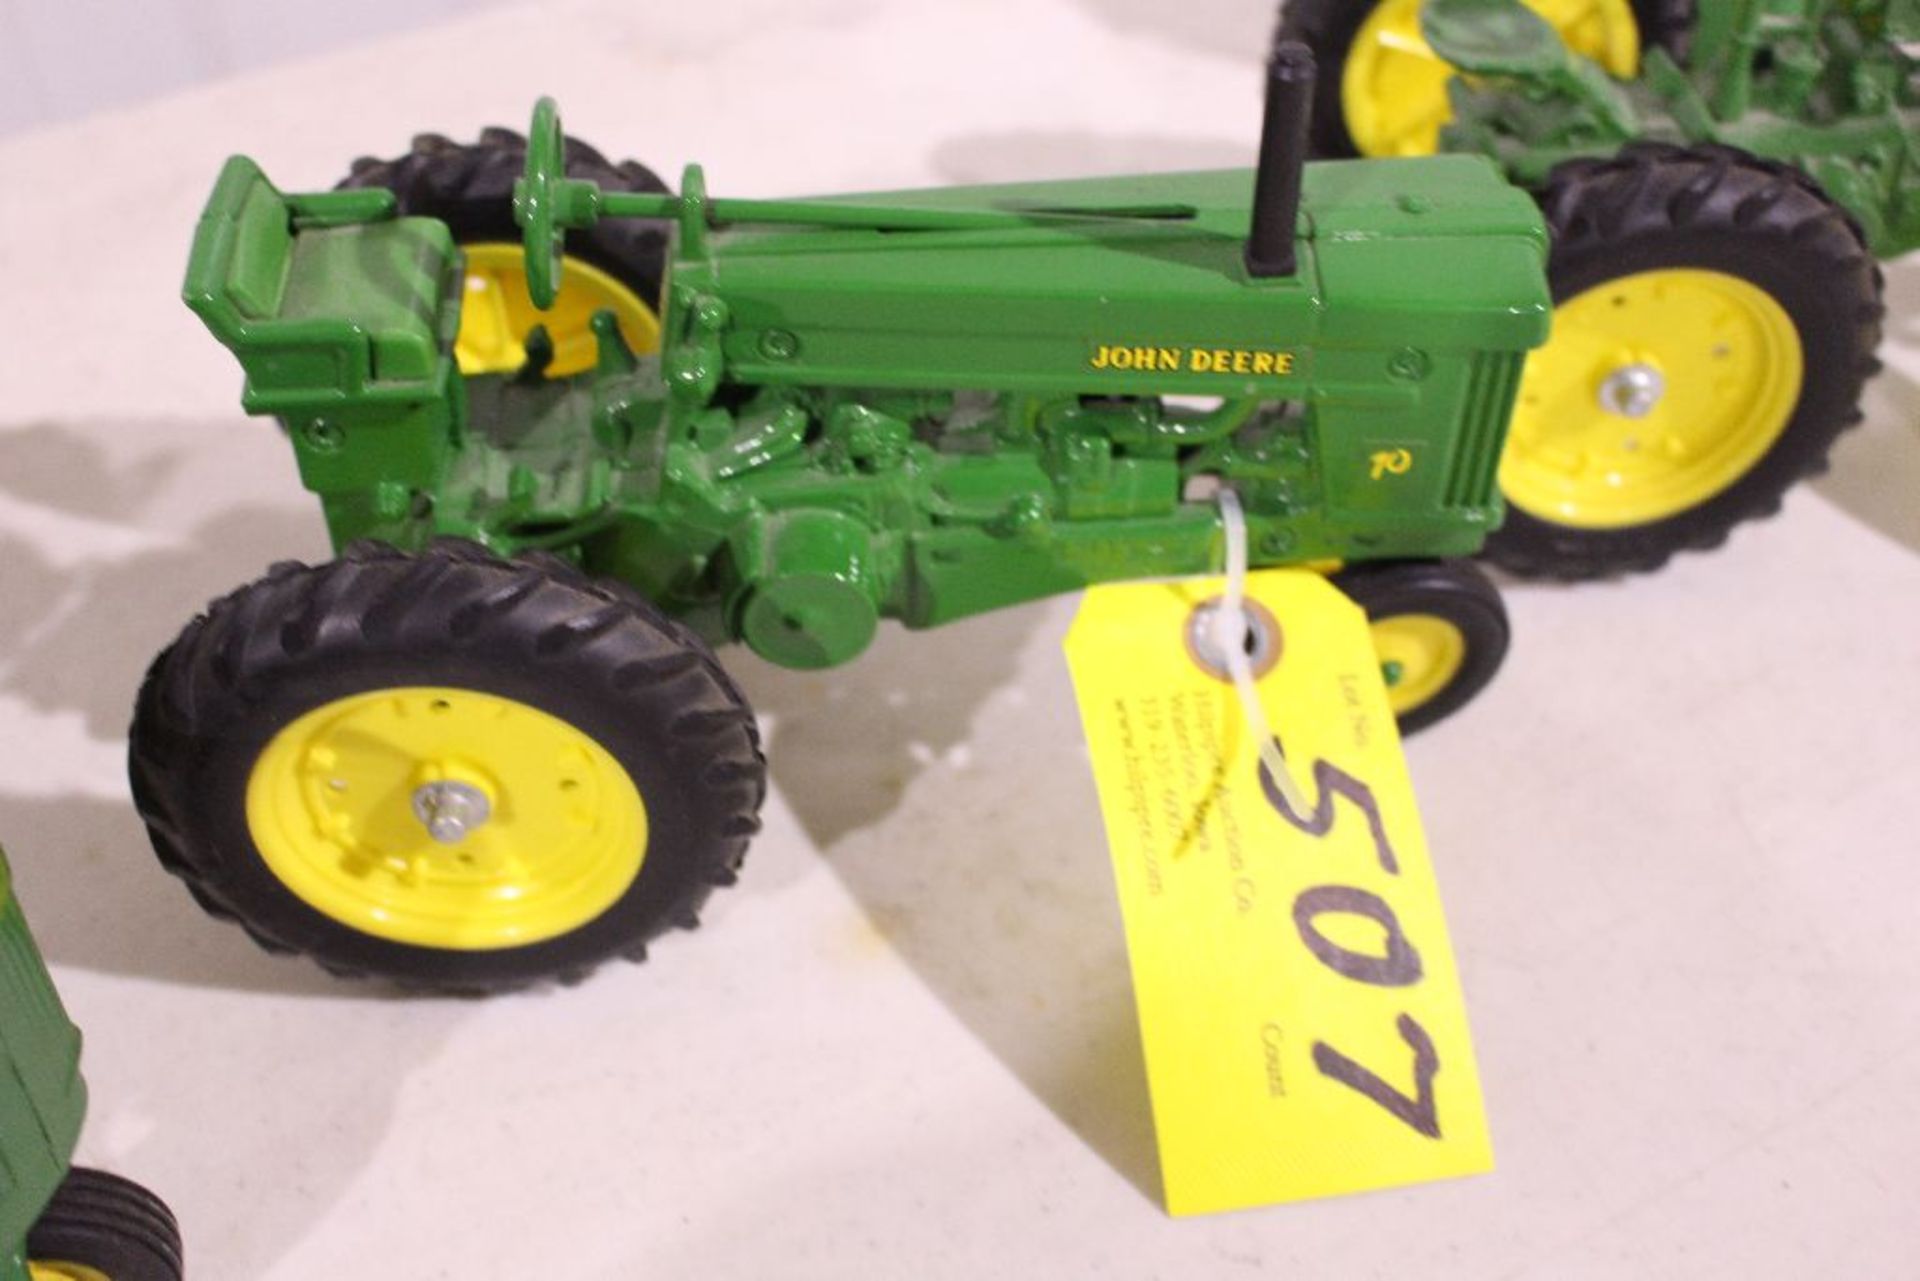 John Deere 70 tractor, 1/16 scale model.